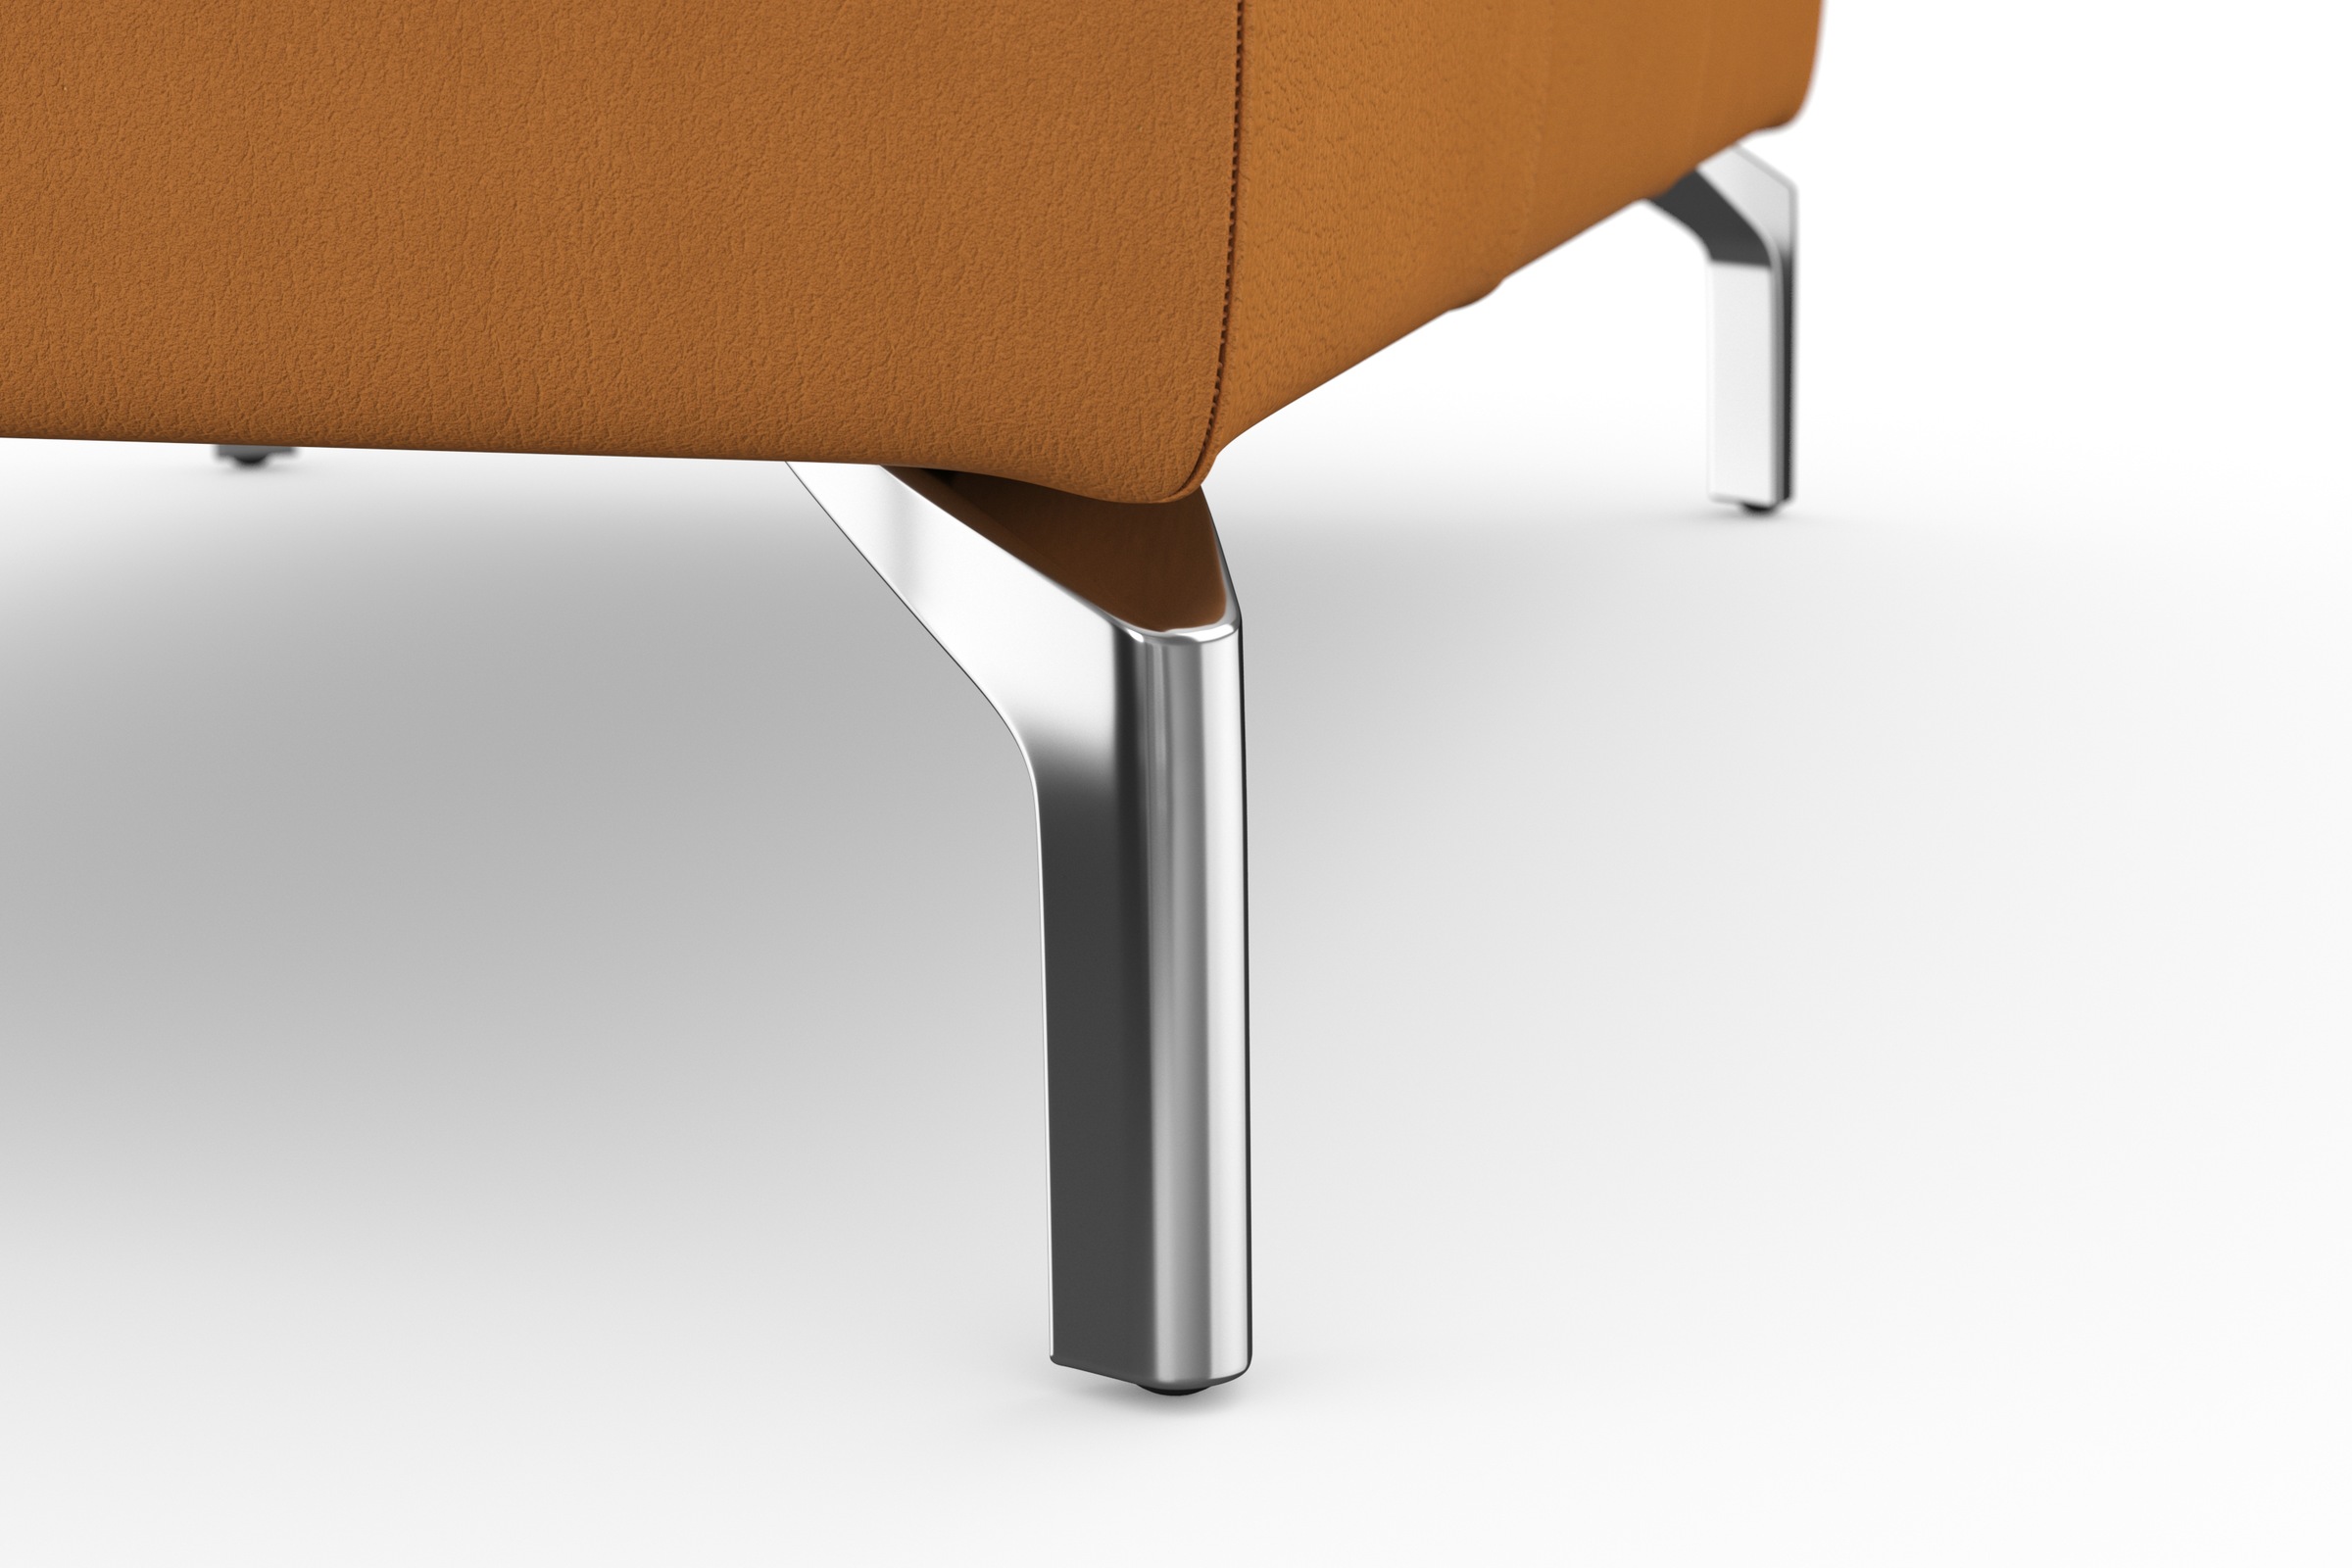 sit&more Hocker »Bendigo«, mit Klappfunktion, Bodenfreiheit 15 cm, wahlweise in 2 Fußfarben